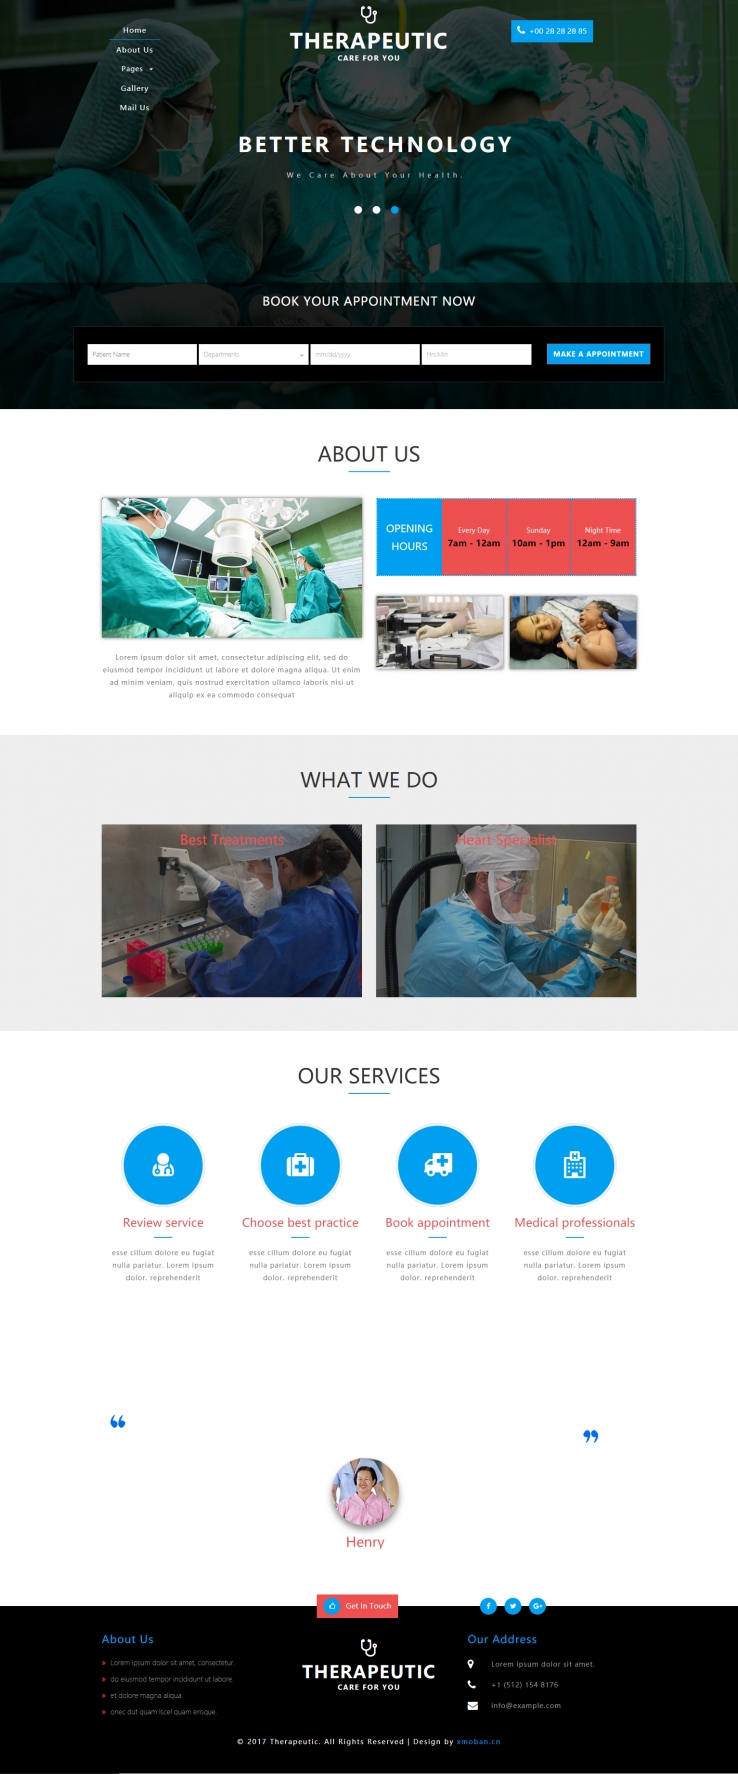 蓝色简洁风格的医疗护理机构企业网站源码下载